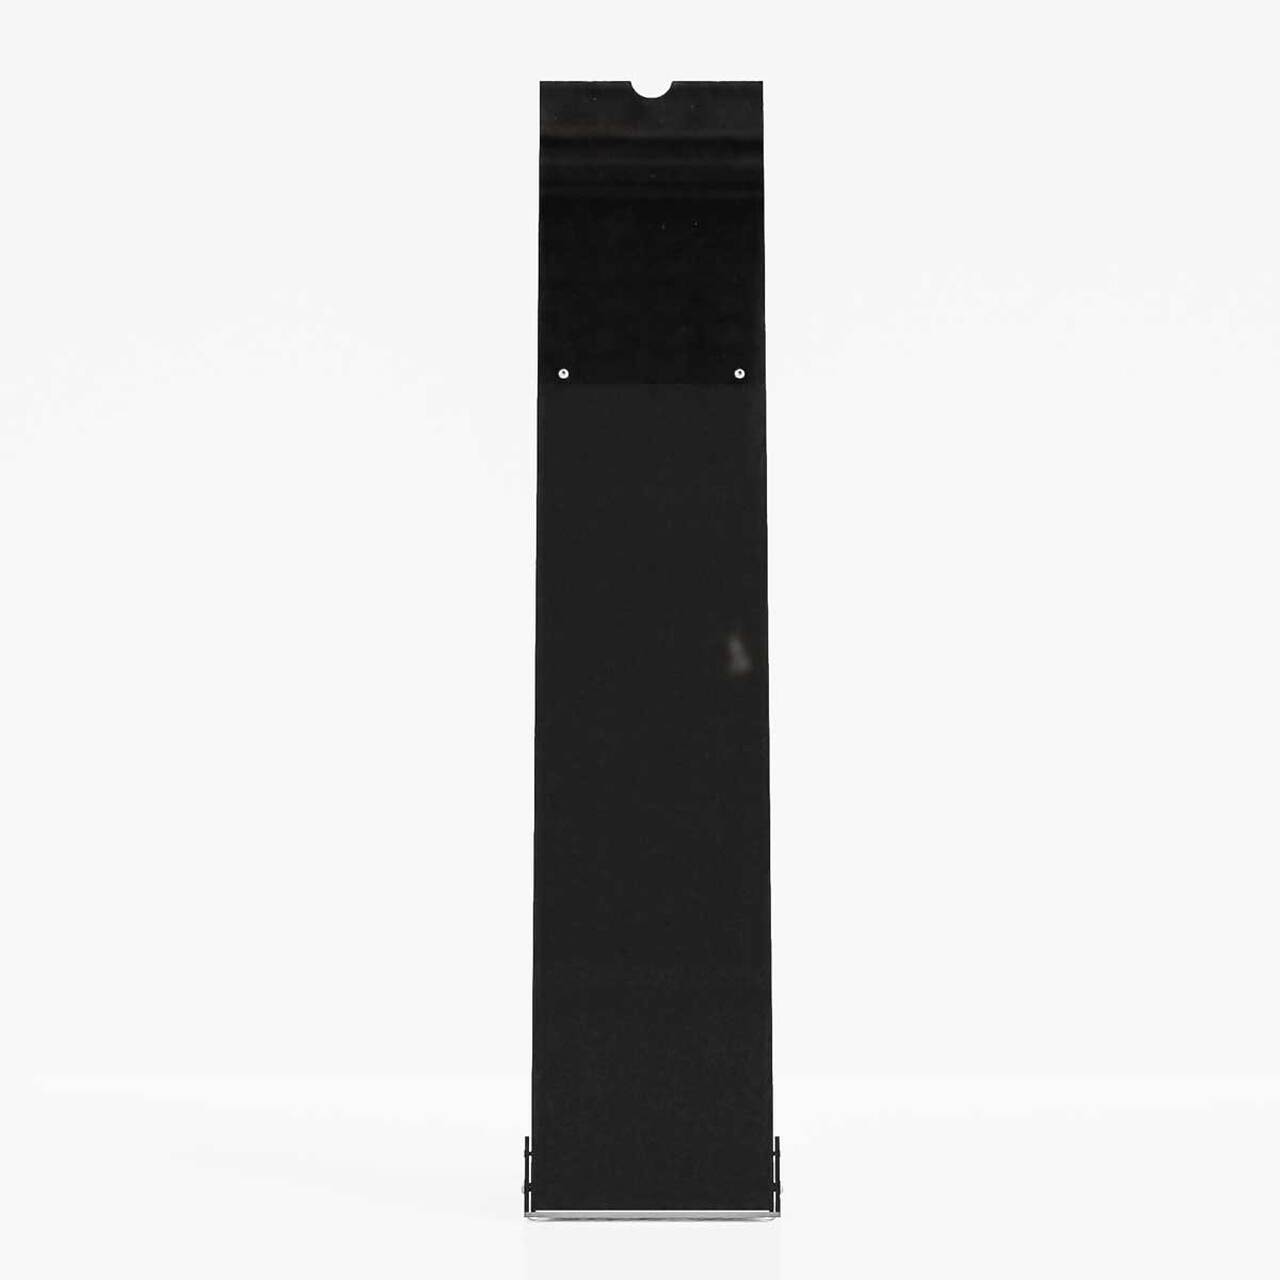 Stand afișaj PREMIUM pentru showroom-uri, negru, dimensiune 240x320x1070(H)mm, cu insert format A4( 210x297mm).